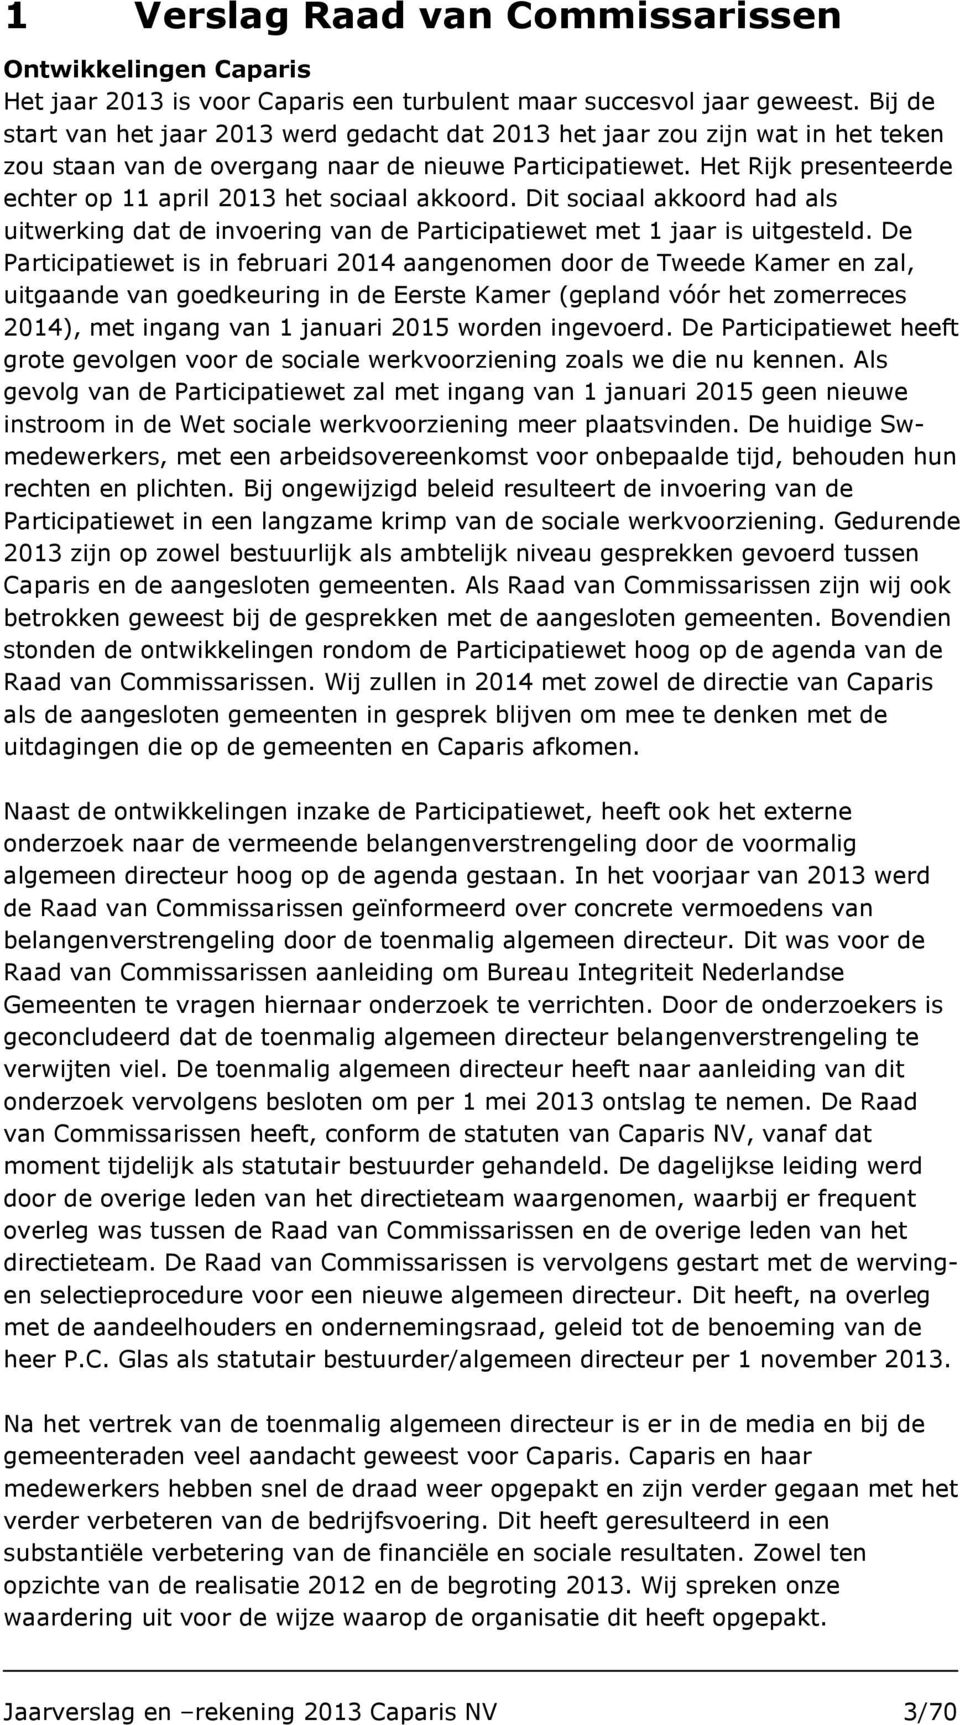 Het Rijk presenteerde echter op 11 april 2013 het sociaal akkoord. Dit sociaal akkoord had als uitwerking dat de invoering van de Participatiewet met 1 jaar is uitgesteld.